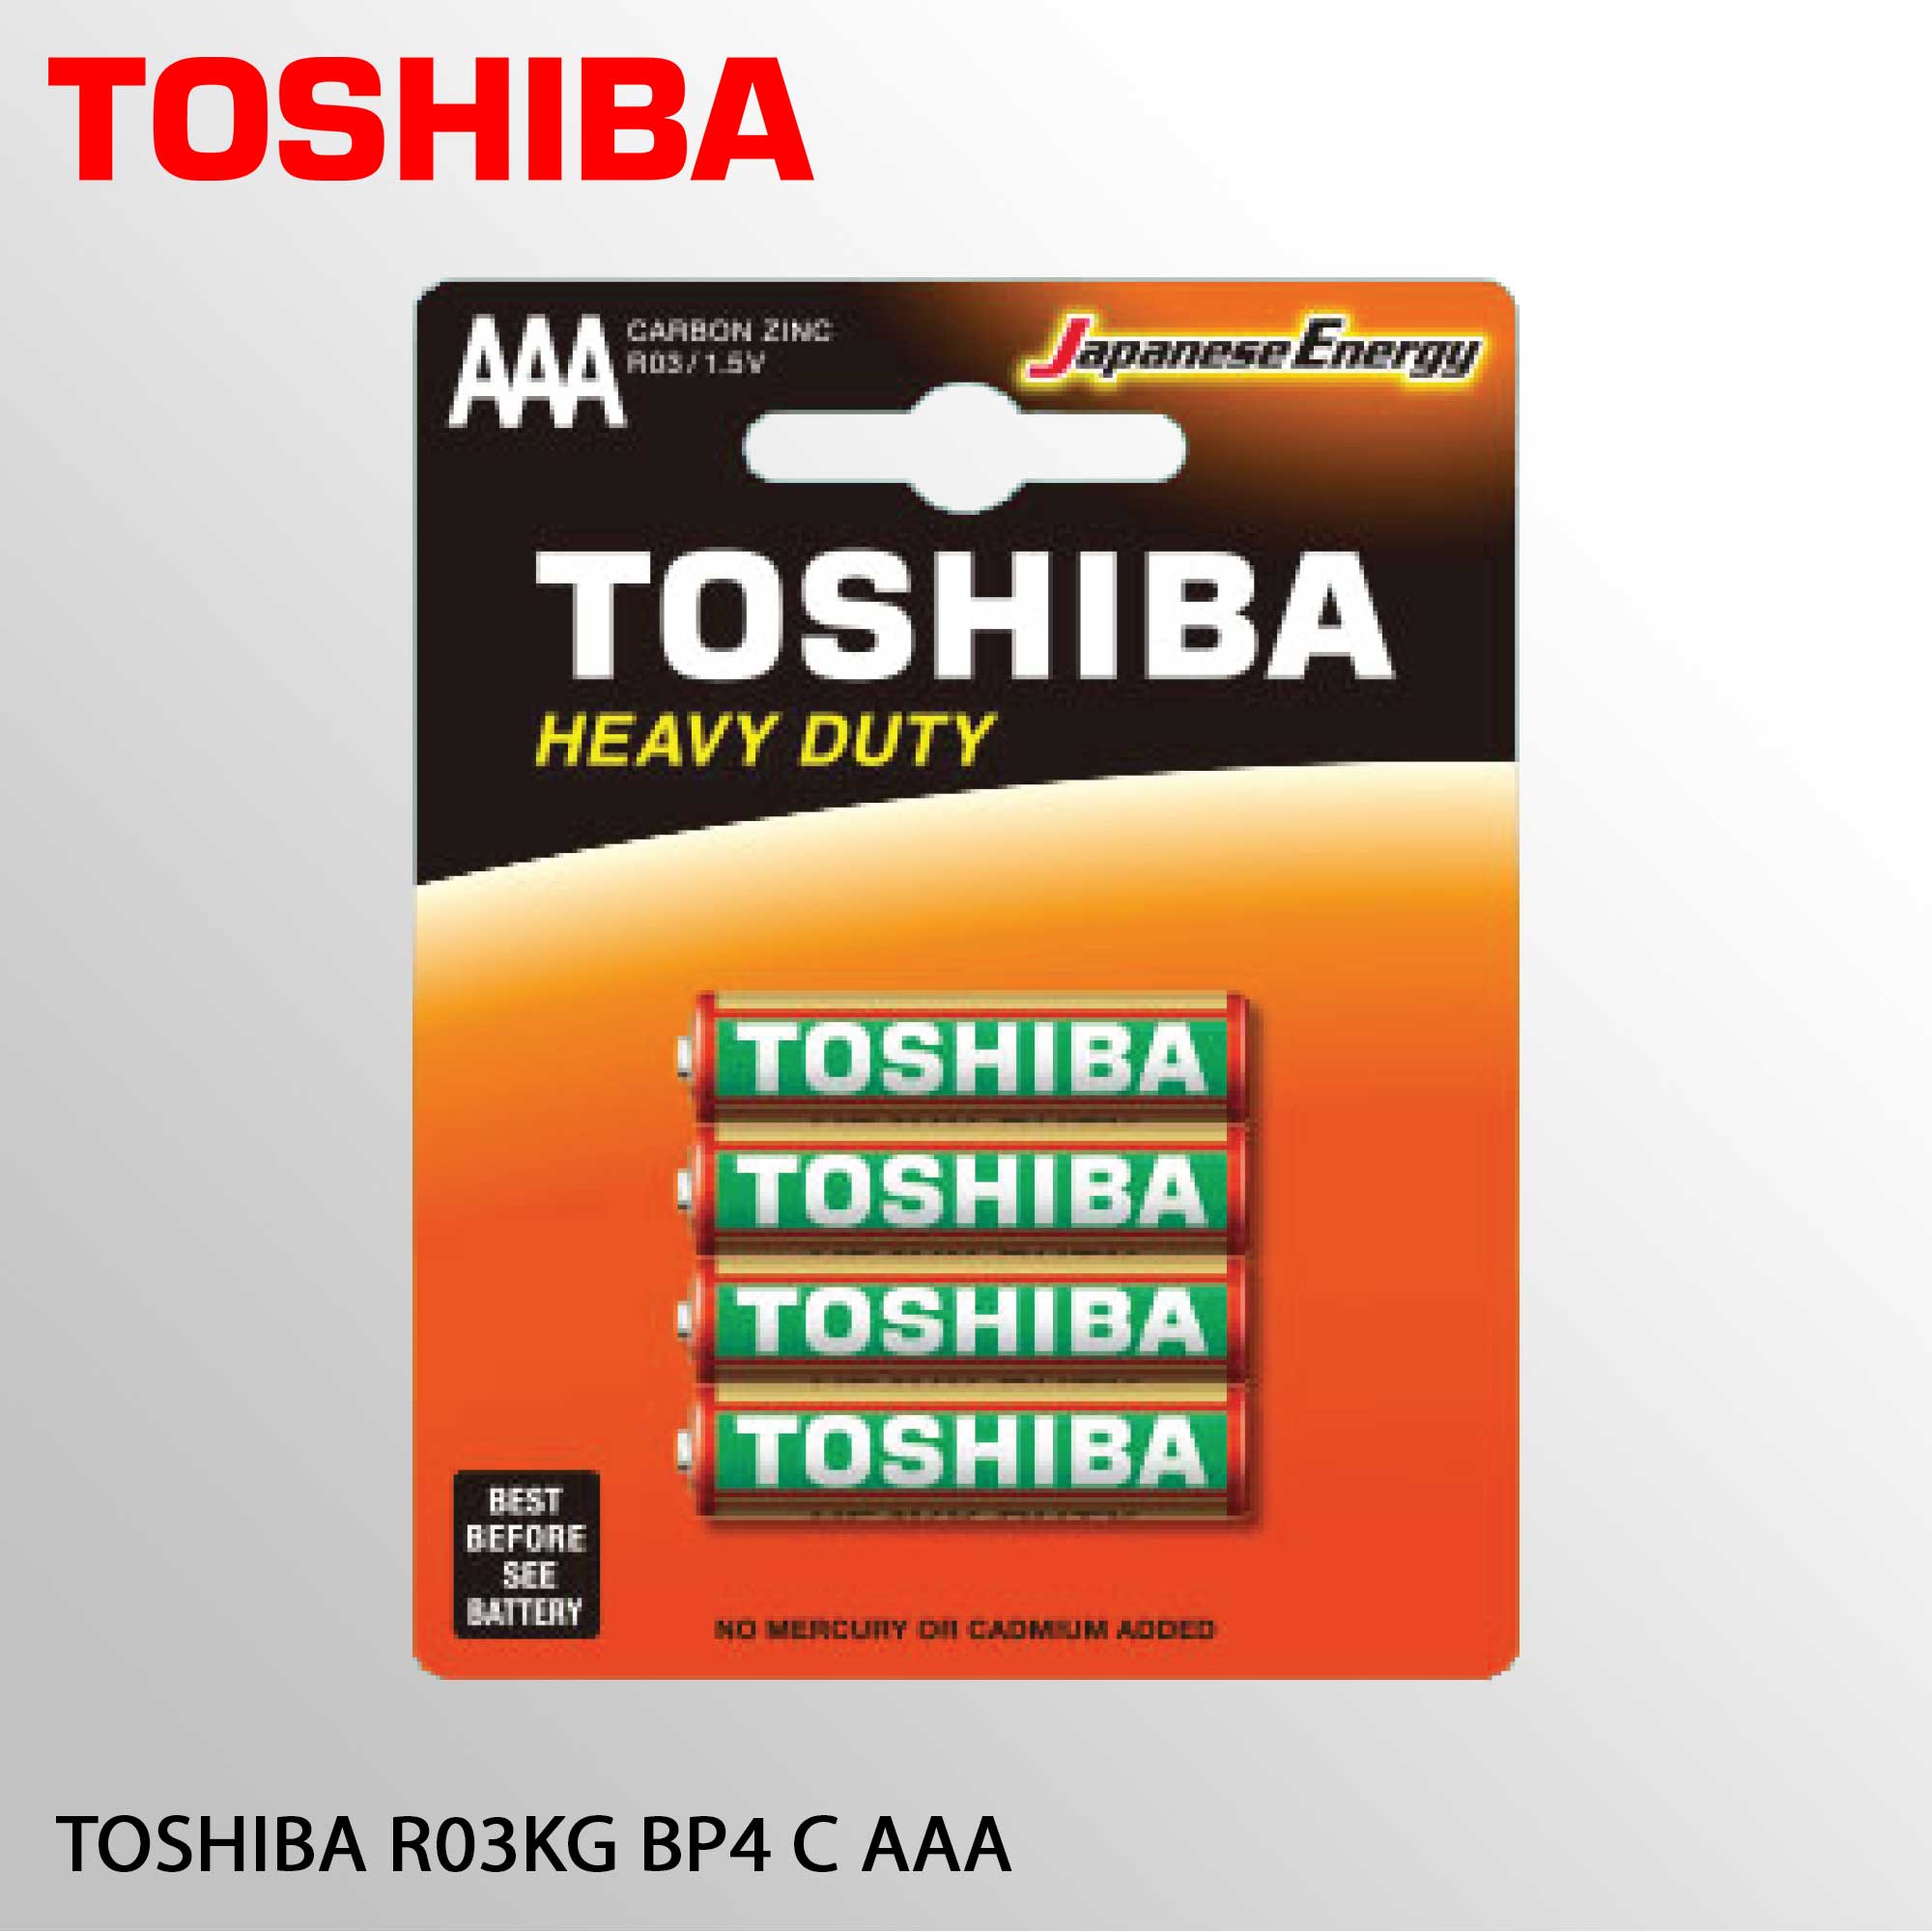 TOSHIBA R03KG BP4 C AAA